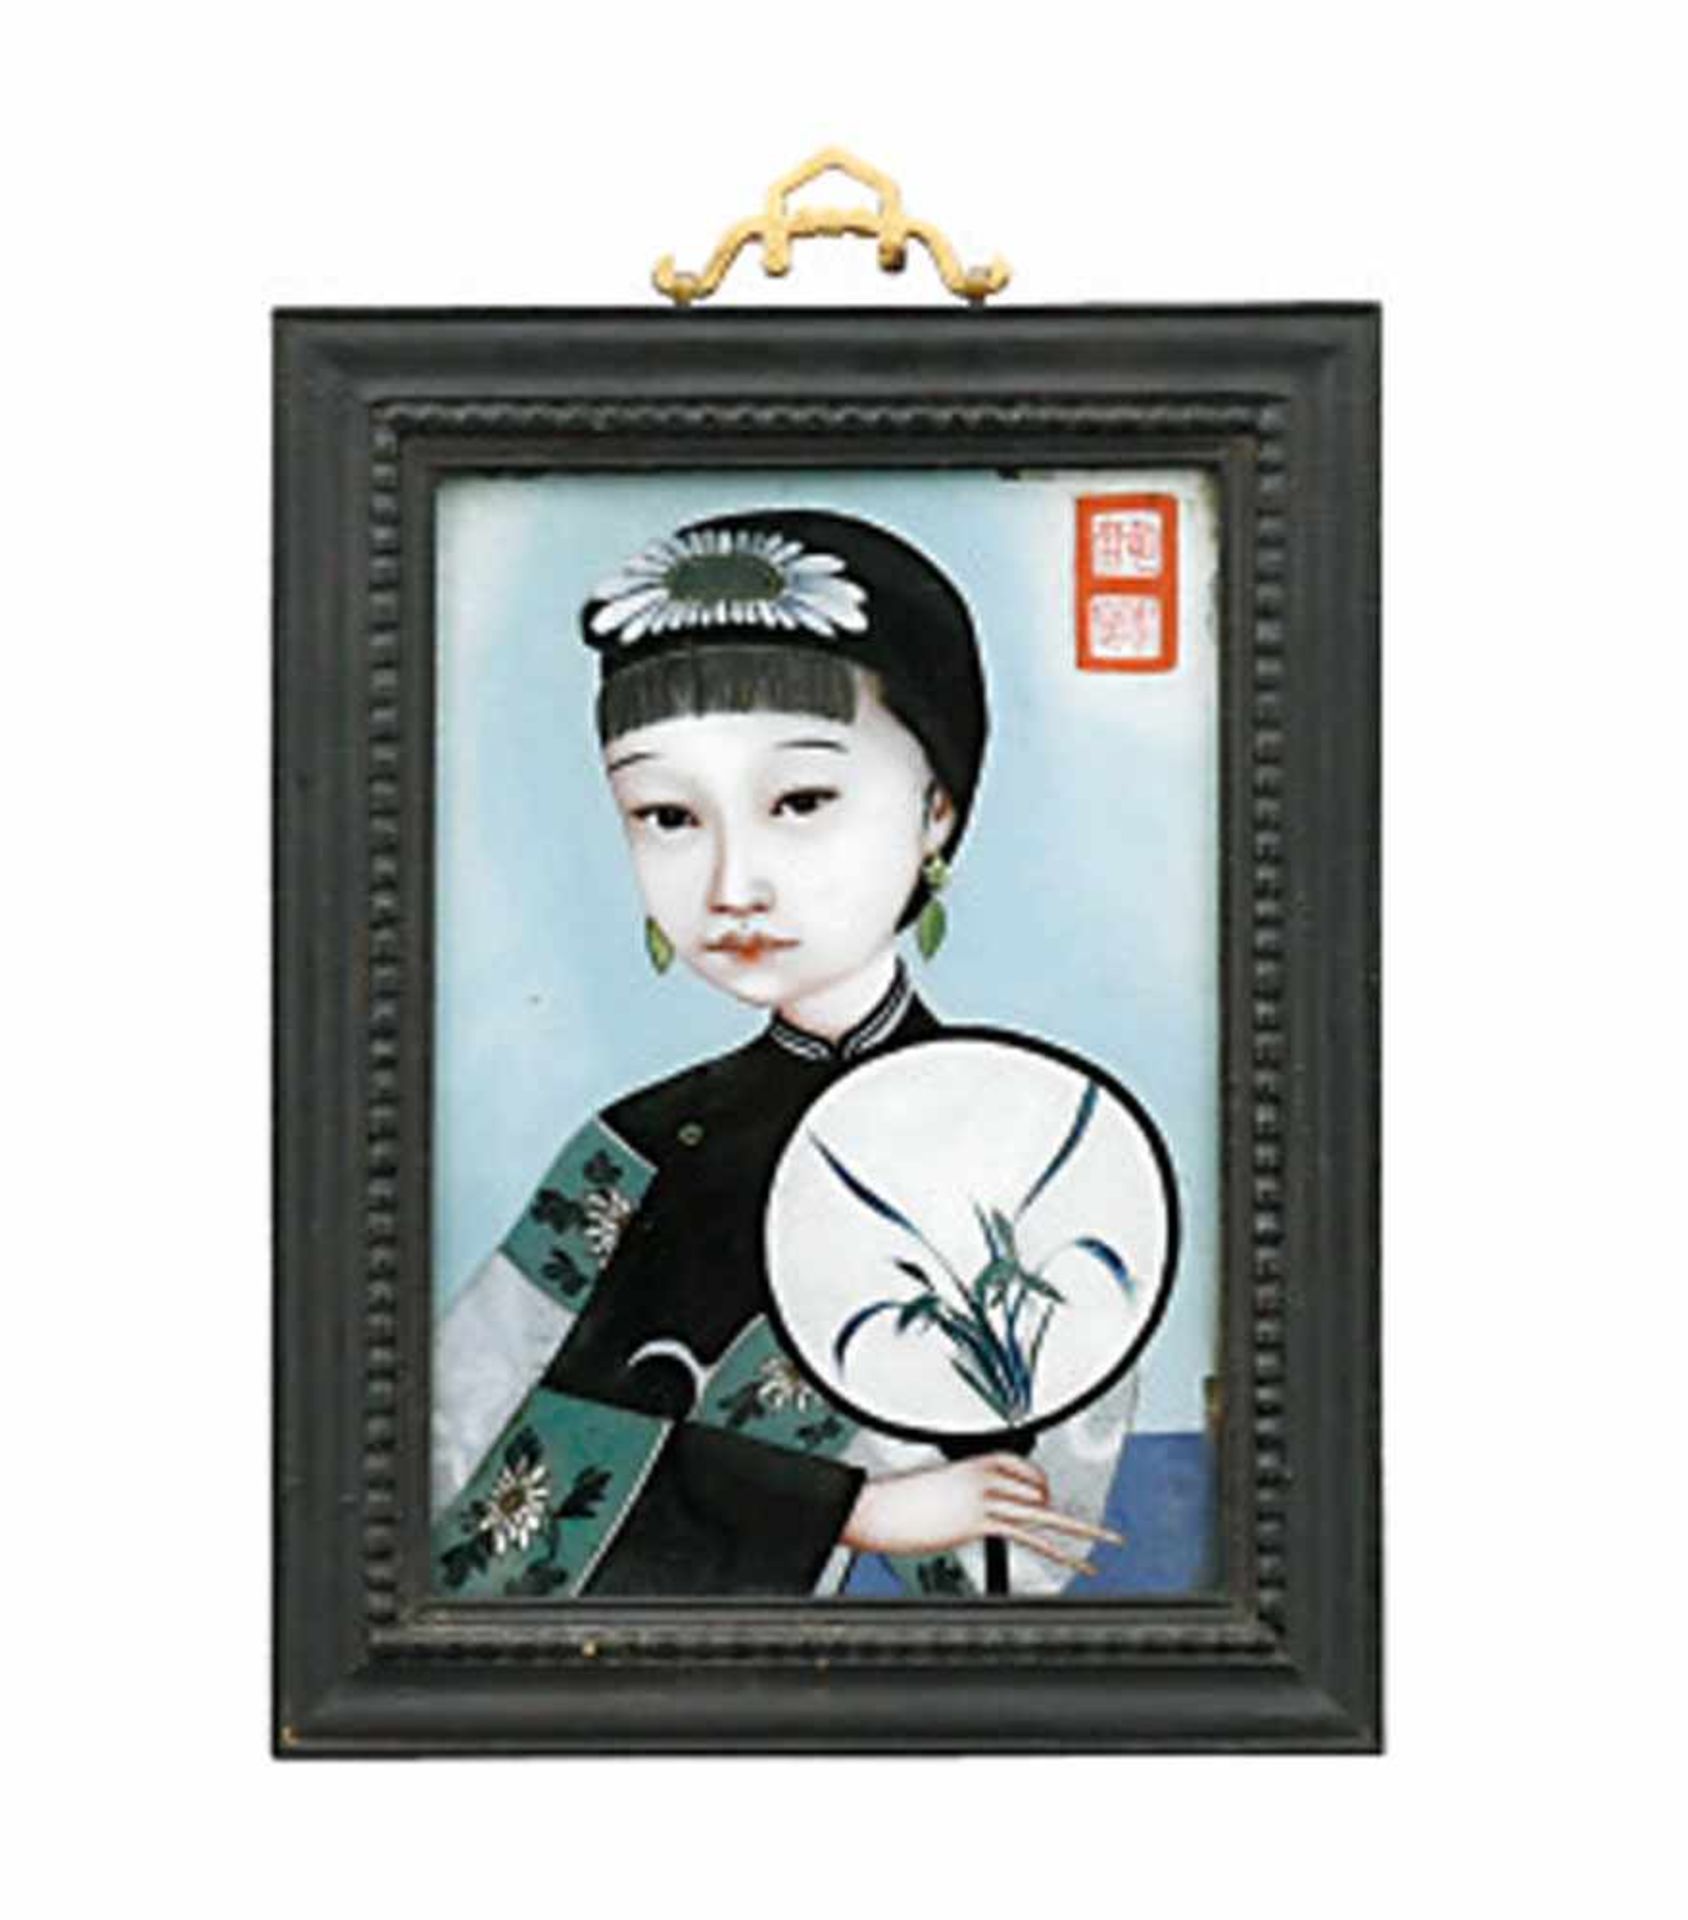 Hinterglasbild: Junge Dame mit FächerChina, wohl 1. Viertel 20. Jh.Polychrome Malerei vor hellblauem